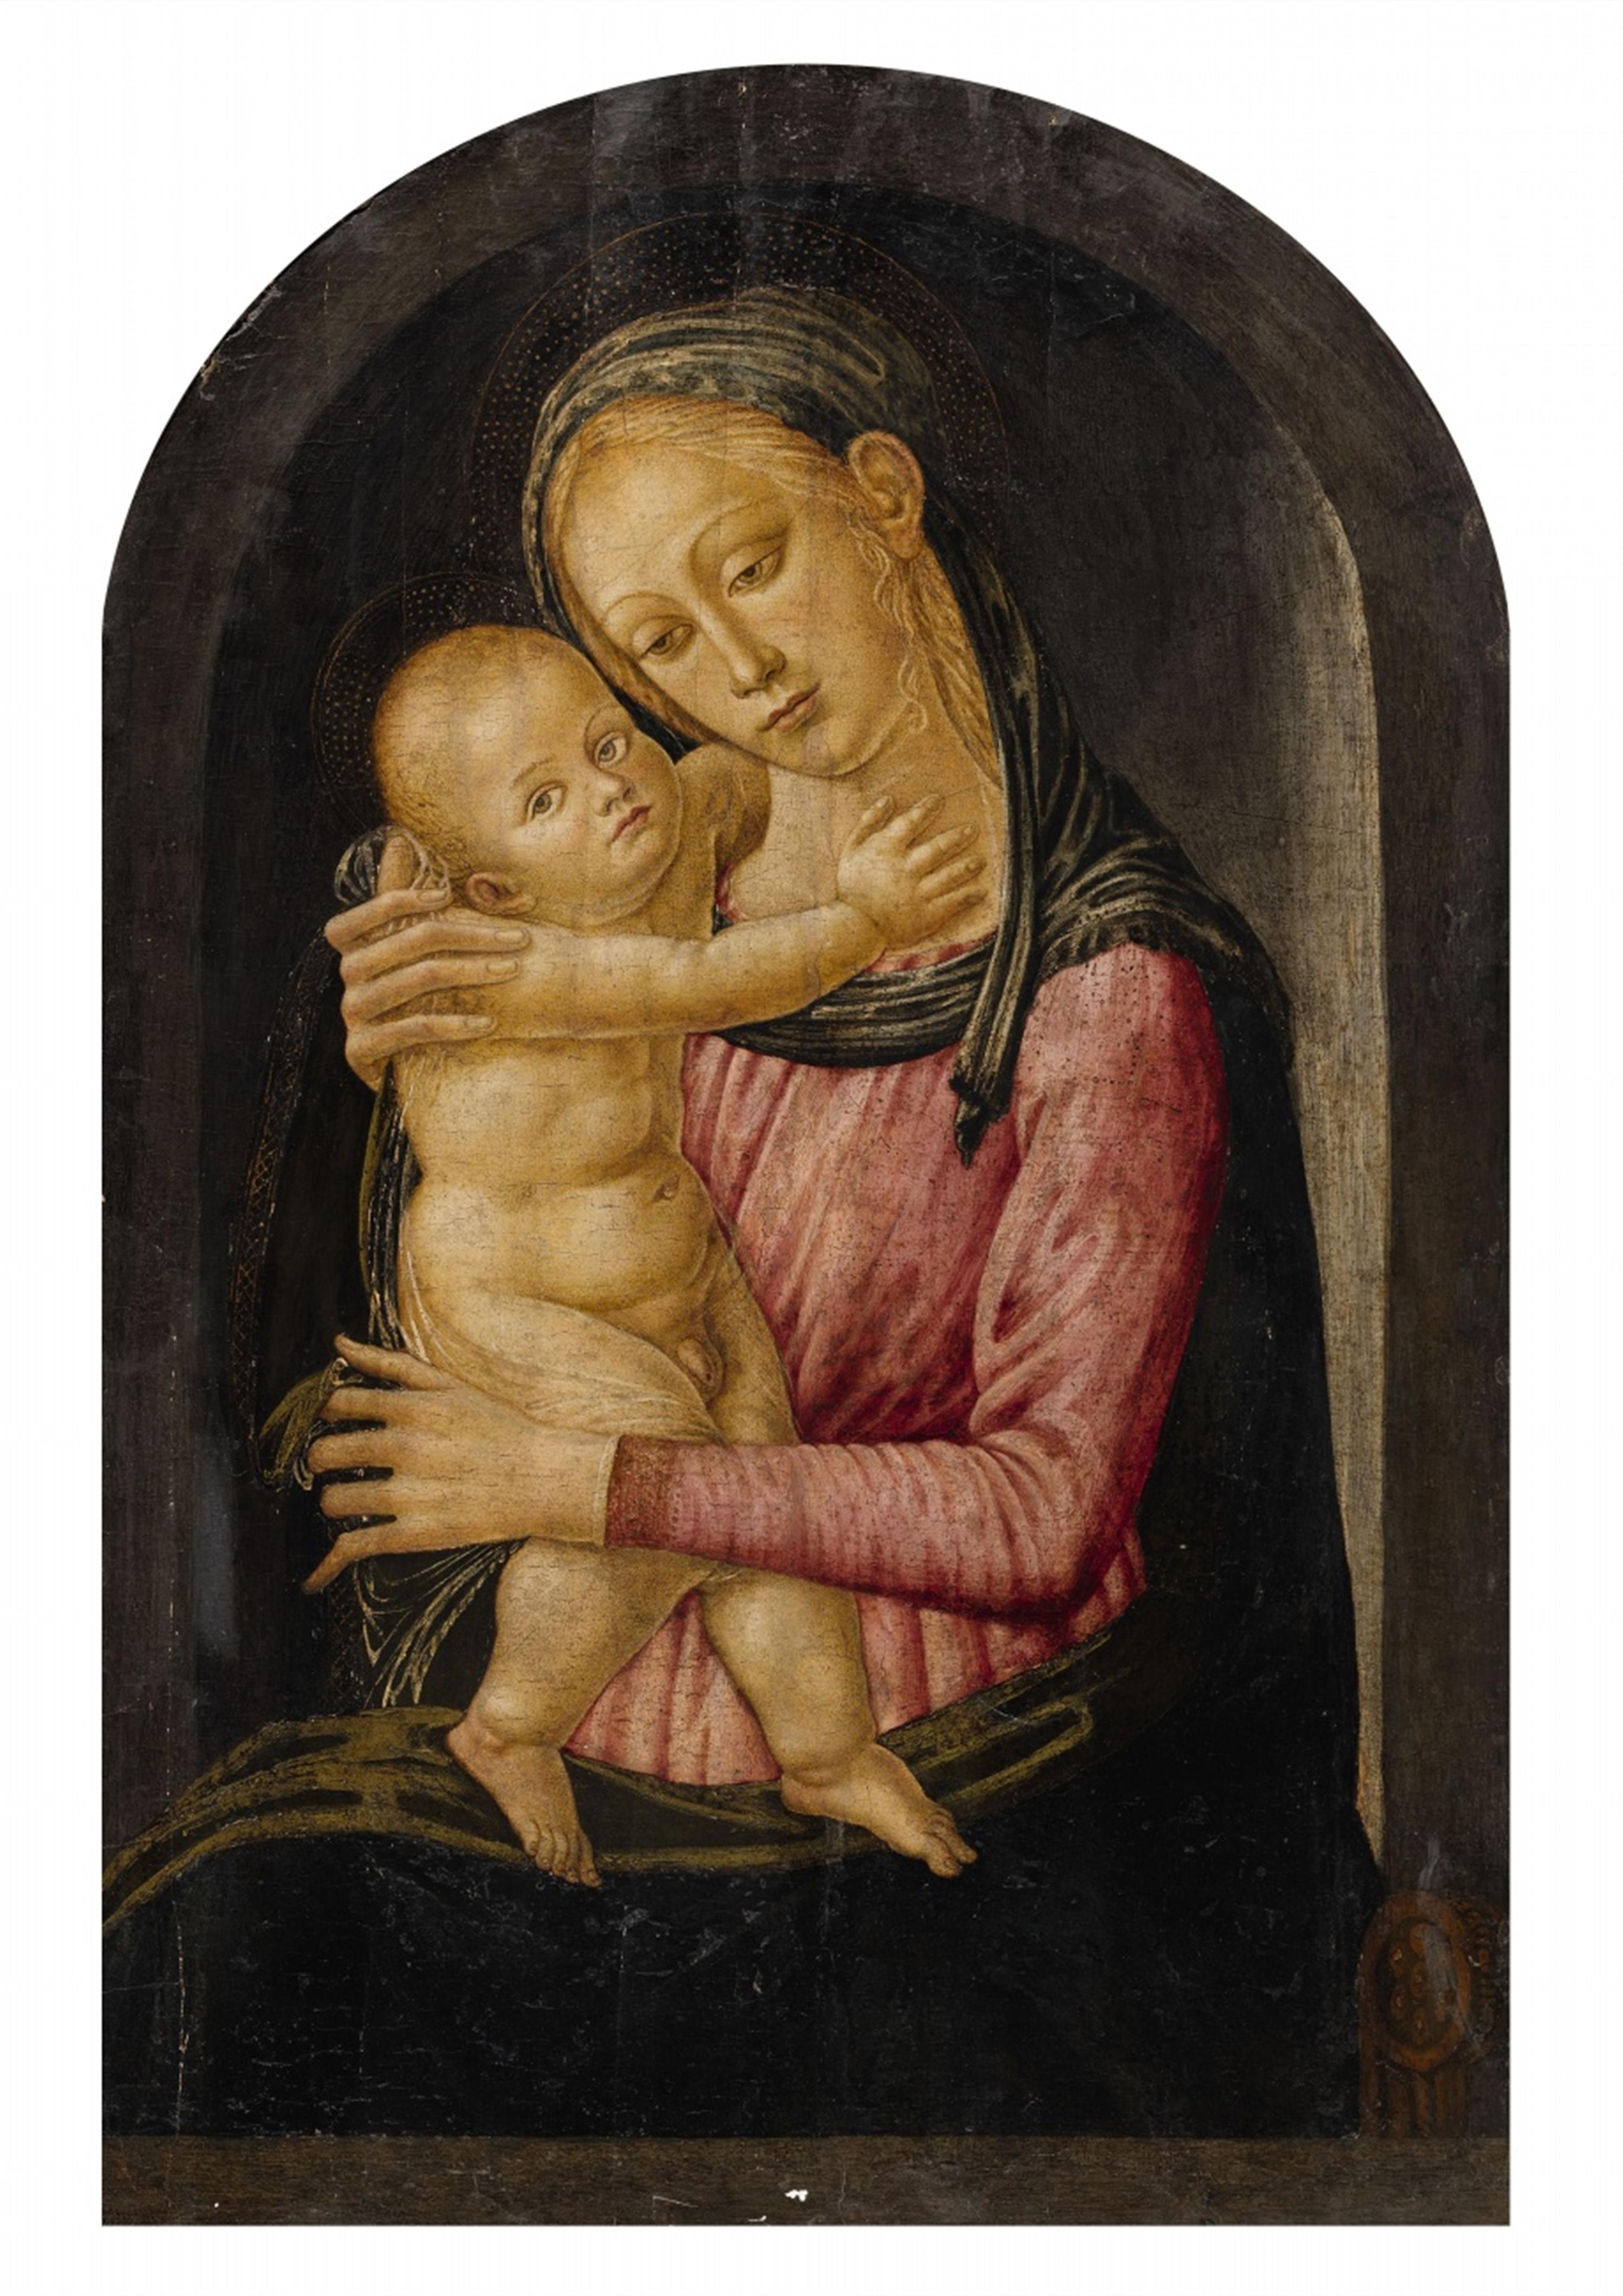 Jacopo del Sellaio, studio of - Madonna with Child